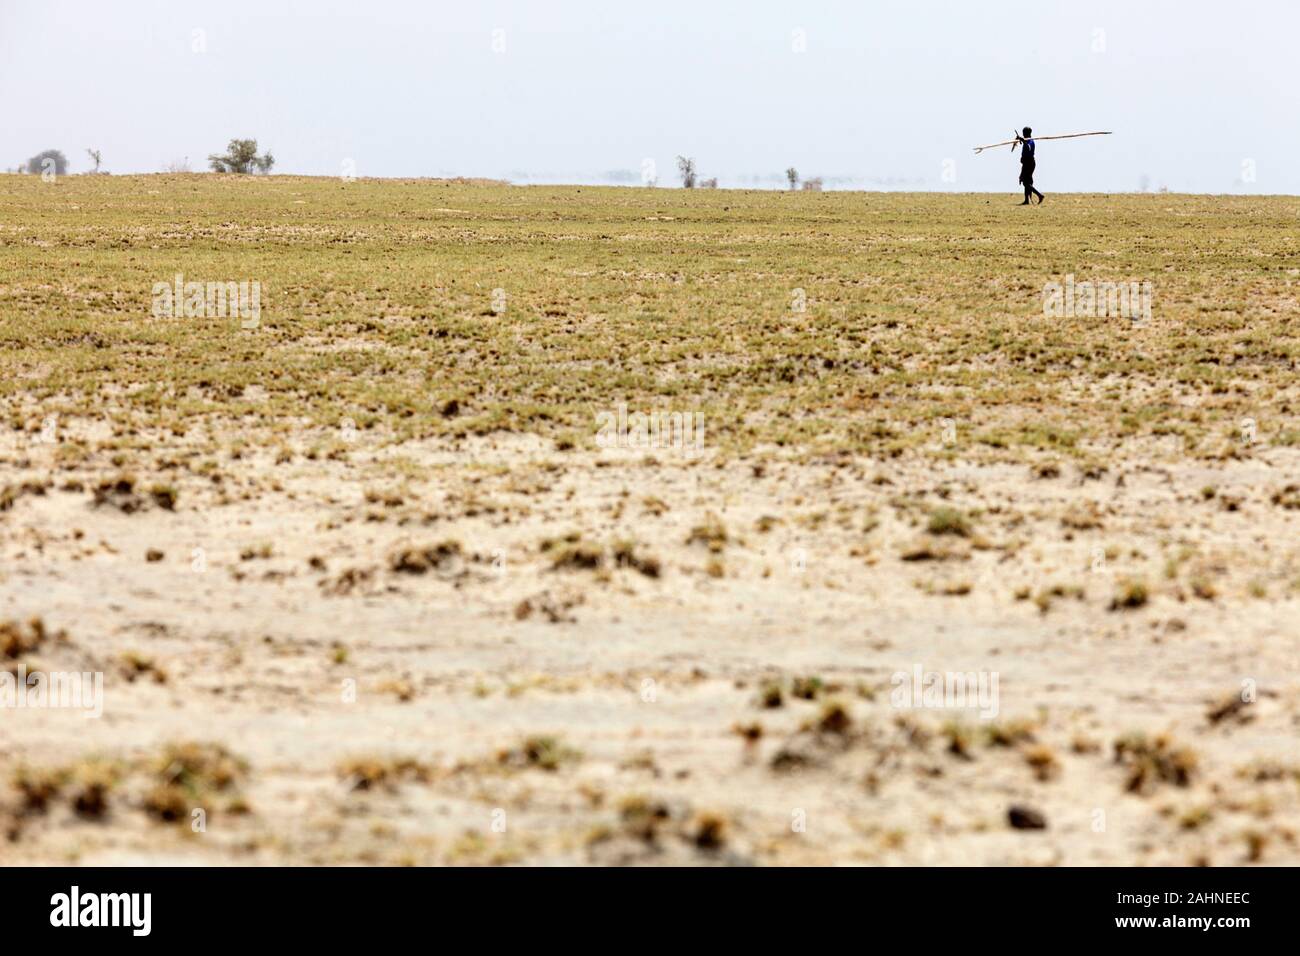 Mann mit einem langen Stock wandern in trockene Landschaft in der Nähe von Lake Turkana, Grenze zwischen Äthiopien und Kenia Stockfoto